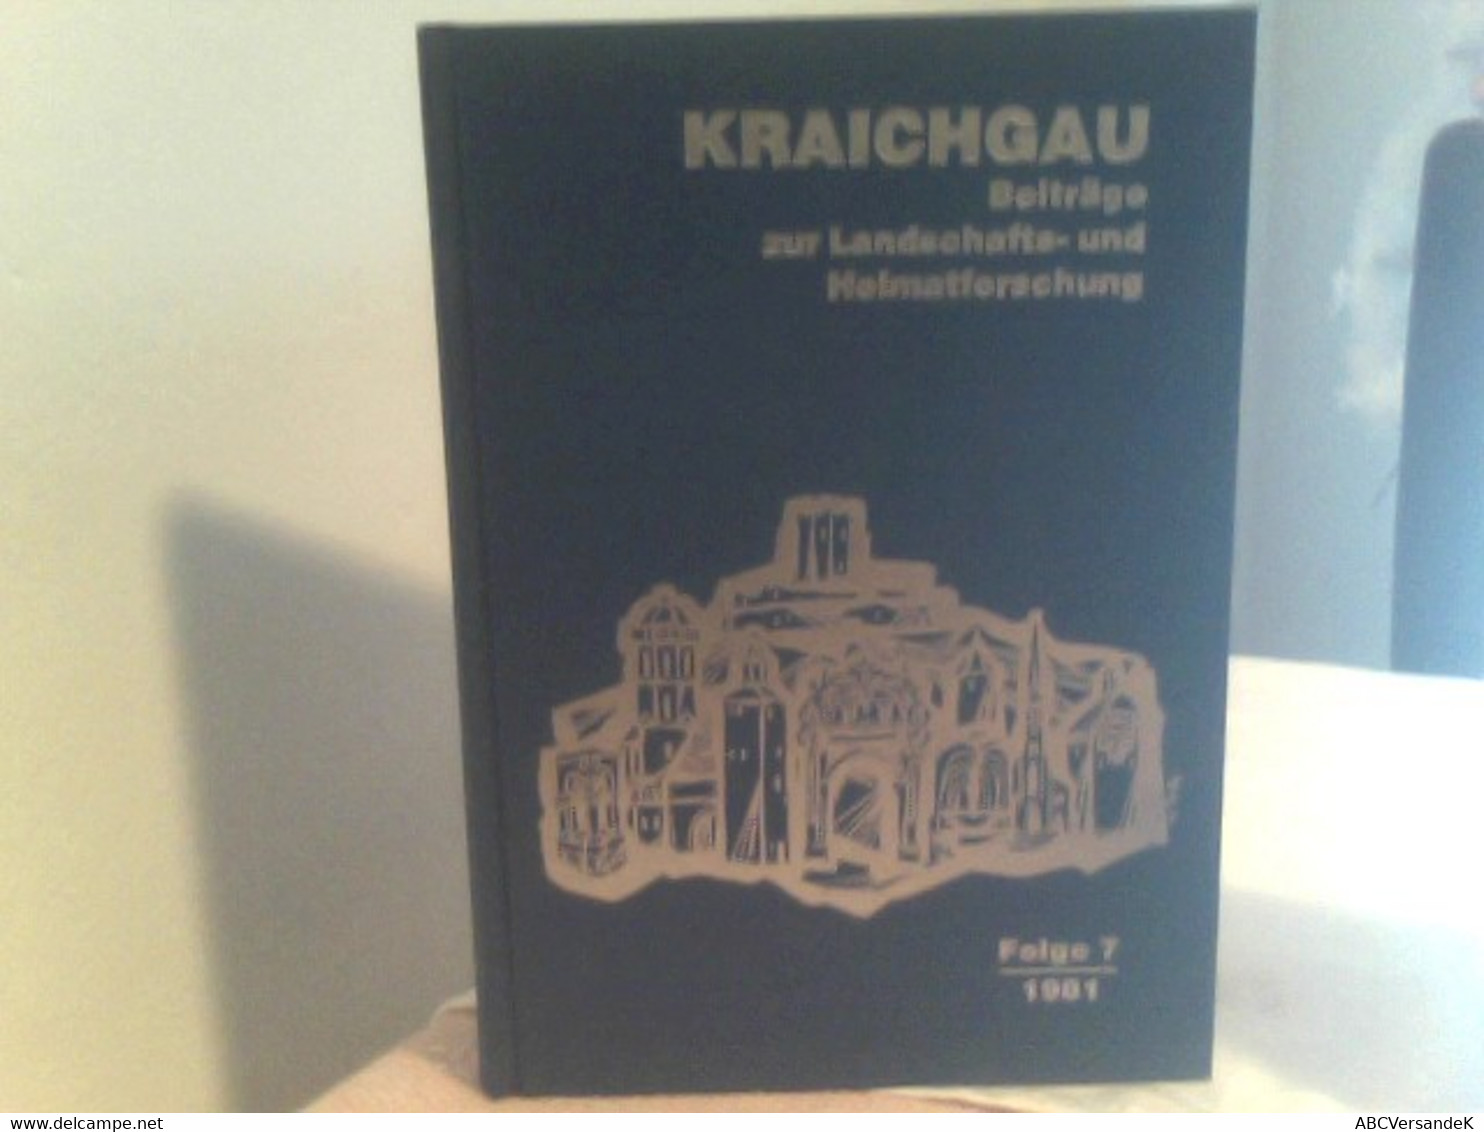 KRAICHGAU Beiträge Zur Landschafts - Und Heimatforschung Folge 7 1981 - Deutschland Gesamt